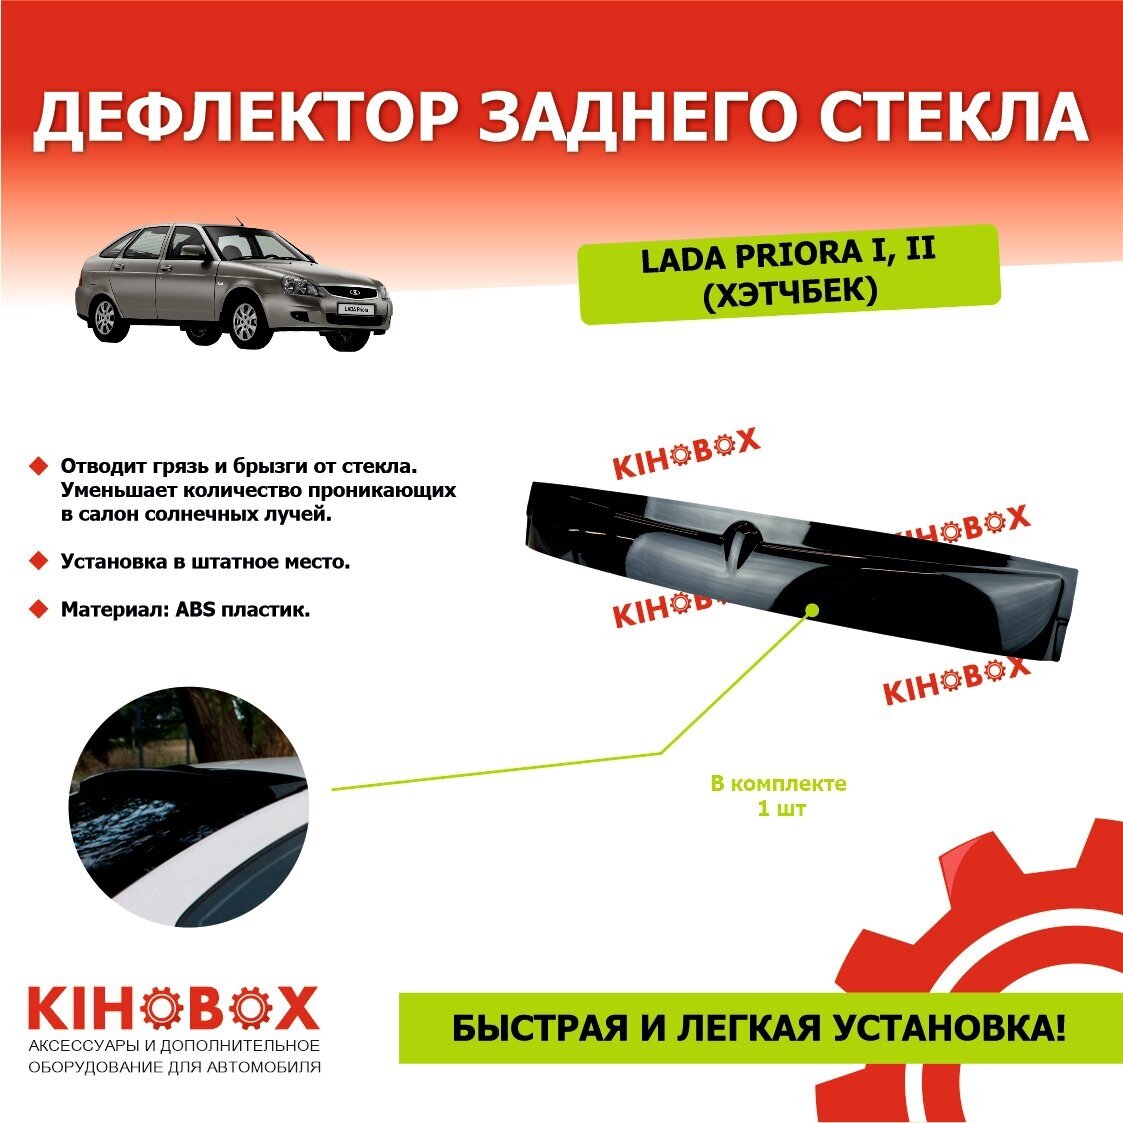 Дефлектор заднего стекла «спойлер» на Лада Приора 1,2 хэтчбек, черный ABS пластик, KIHOBOX АРТ 5932902